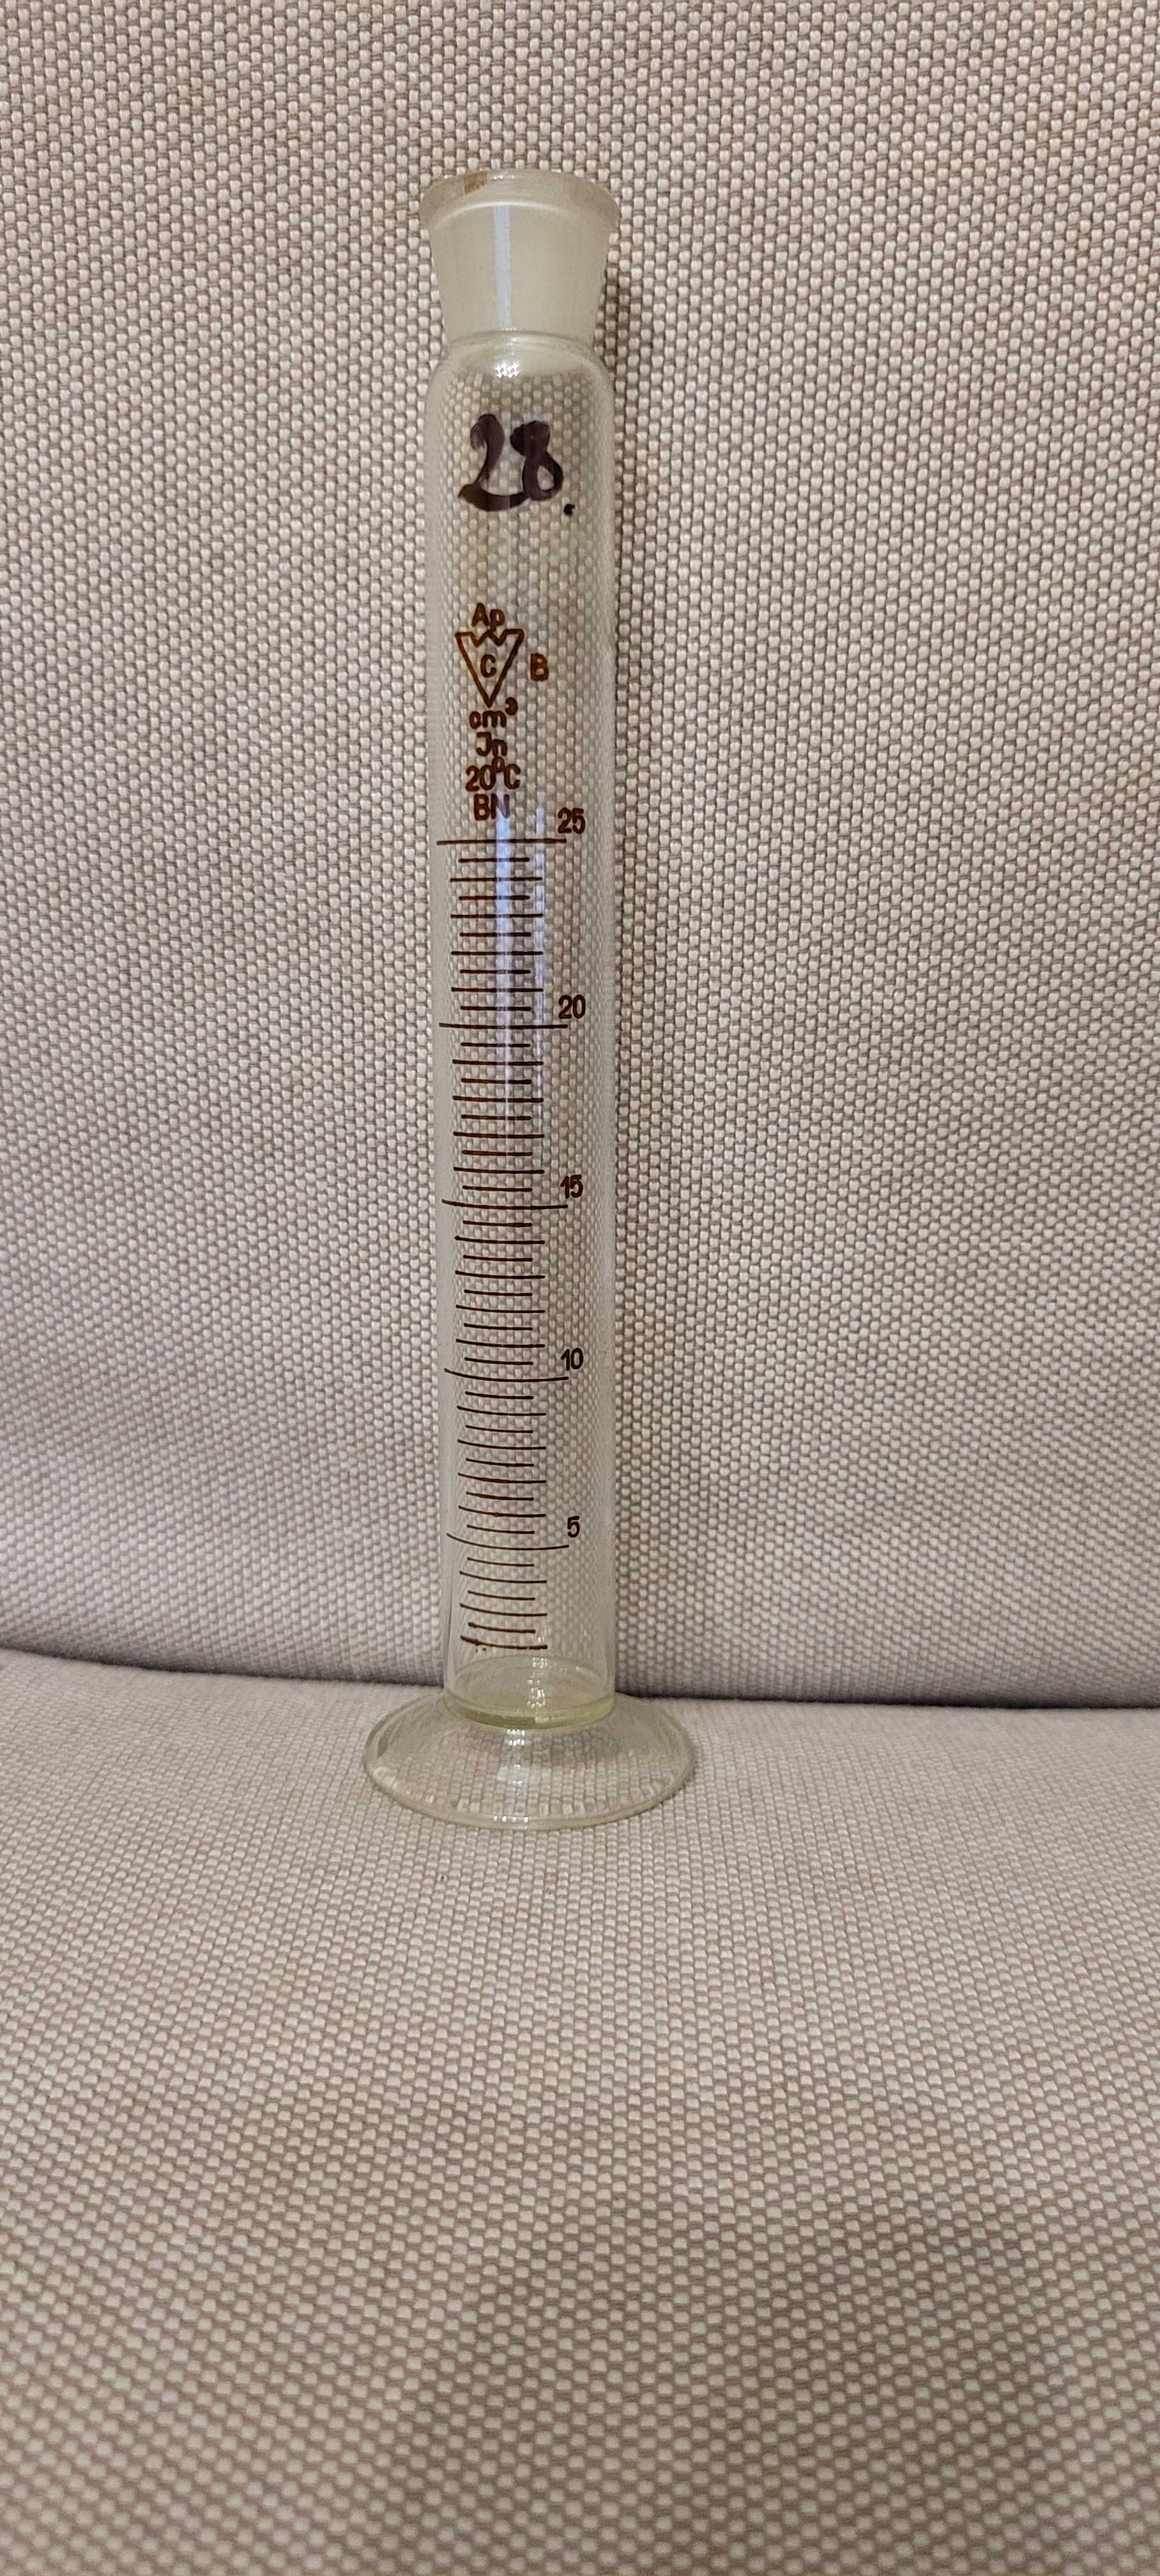 Cylinder miarowy nr 28, pojemność 25 ml / szkło laboratoryjne